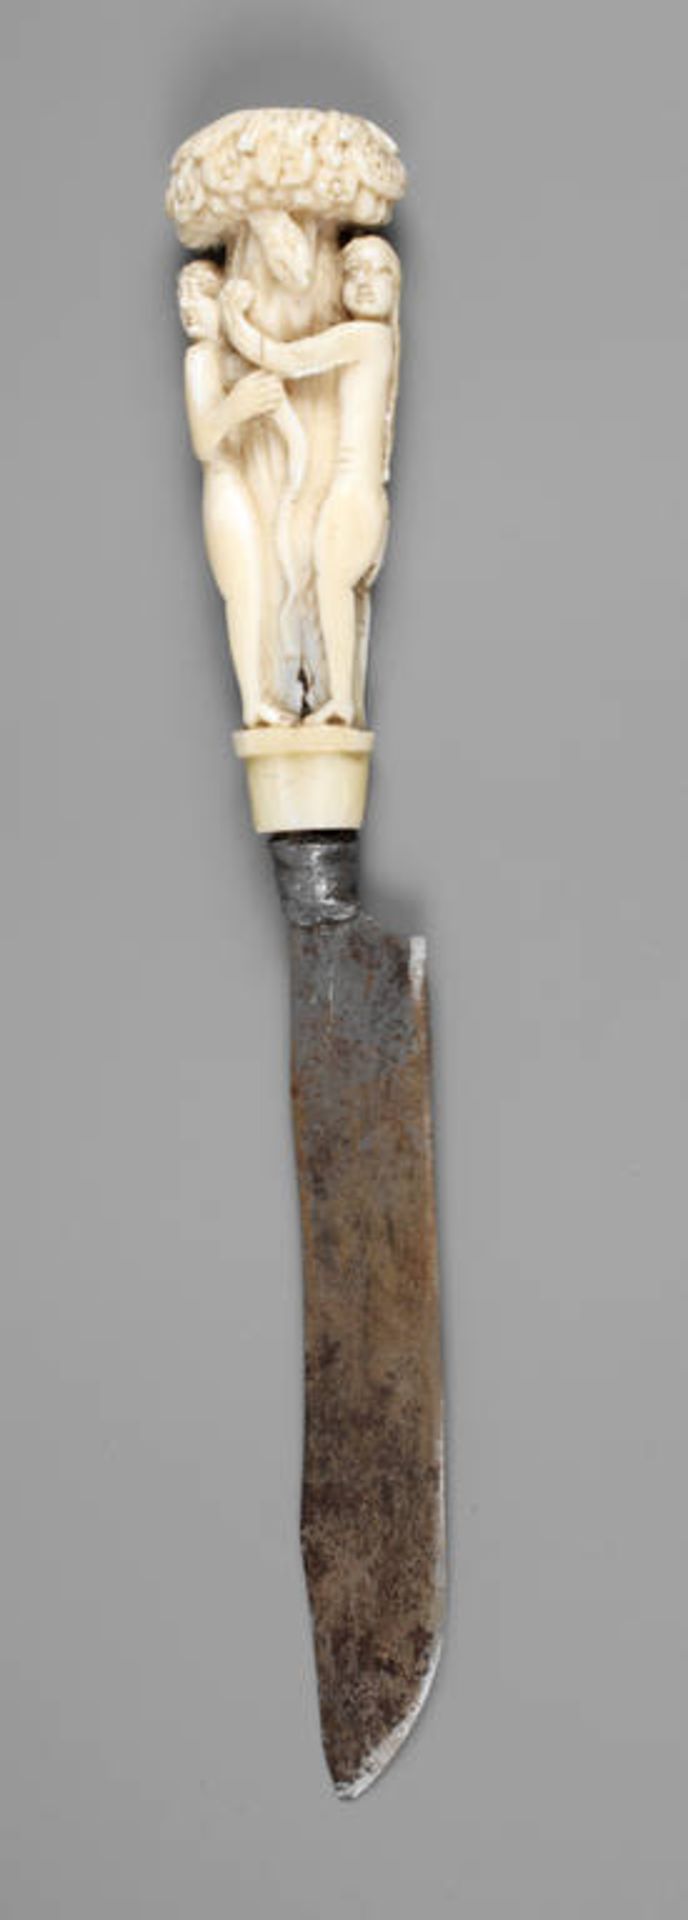 Messer mit Elfenbeingriff
wohl 17. Jh., Elfenbein fein beschnitzt, Darstellung von Adam und Eva am